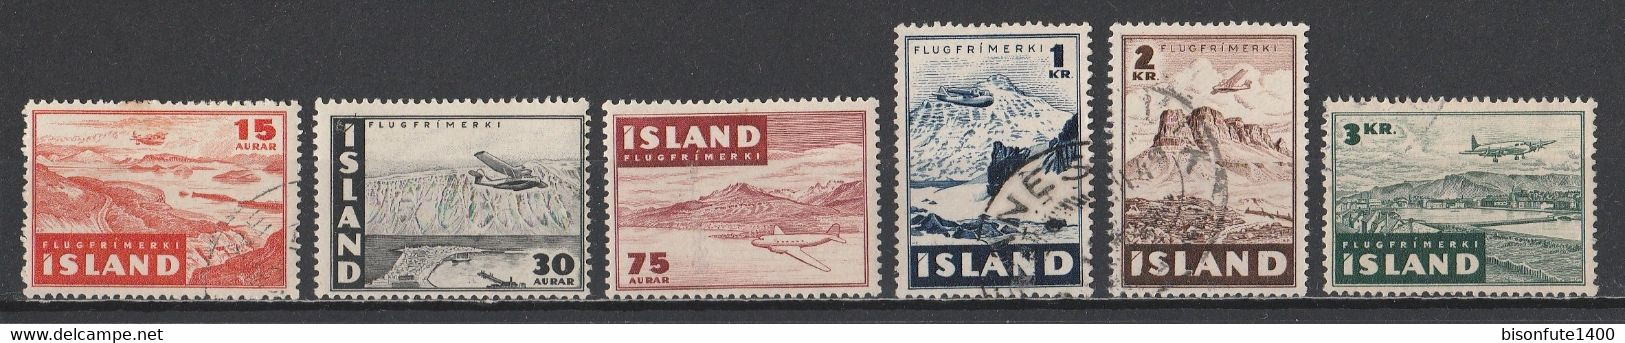 Islande Aérien 1947 : Timbres Yvert & Tellier N° 21 - 22 - 23 - 24 - 25 Et 26 Oblitérés. - Poste Aérienne